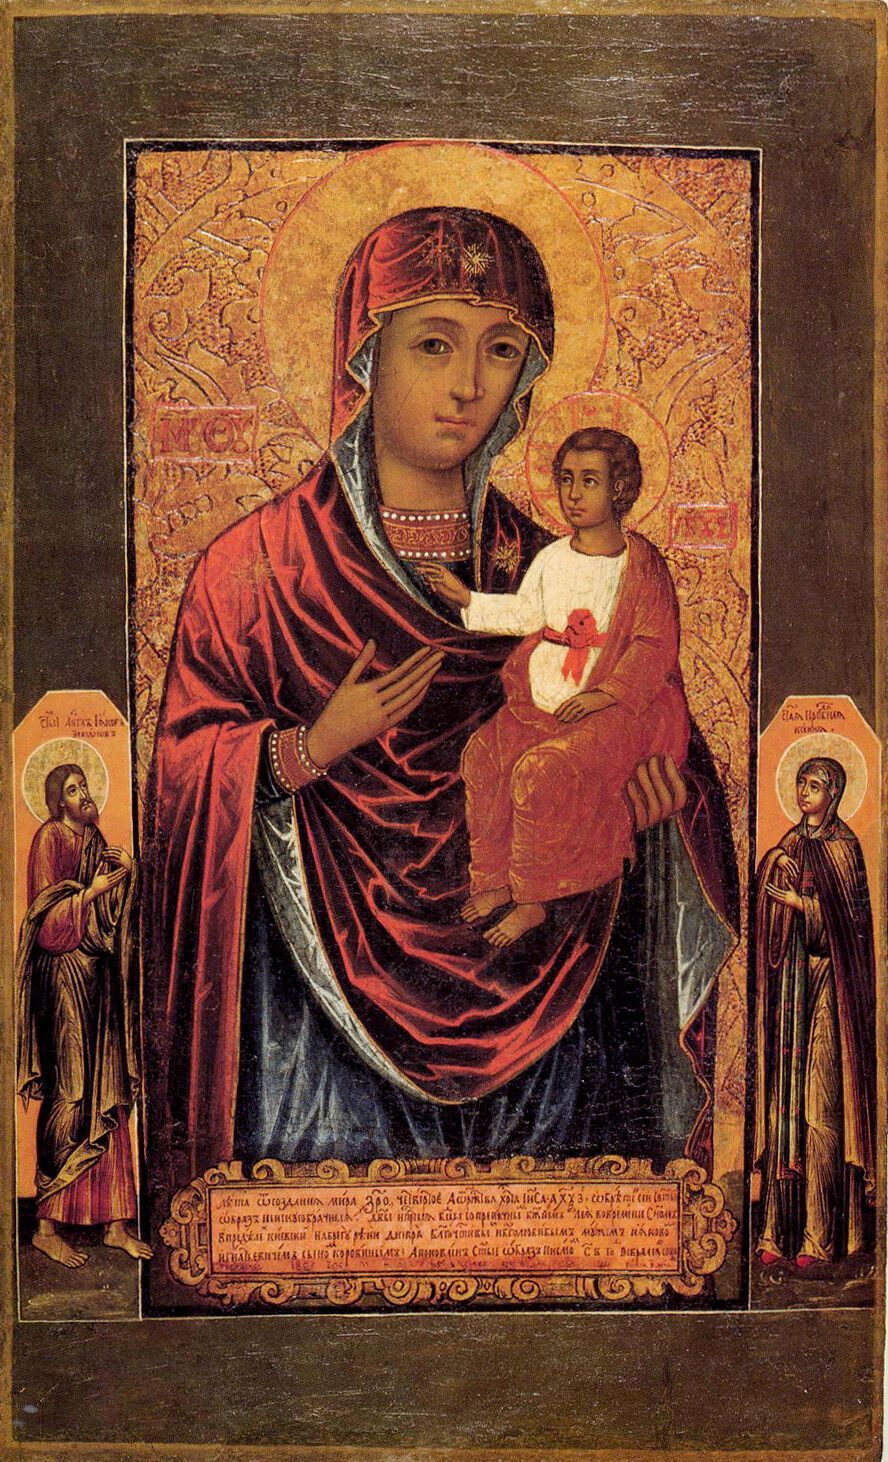 Згідно з переказами, Віленська ікона Божої Матері була написана апостолом від сімдесяти євангелістом Лукою